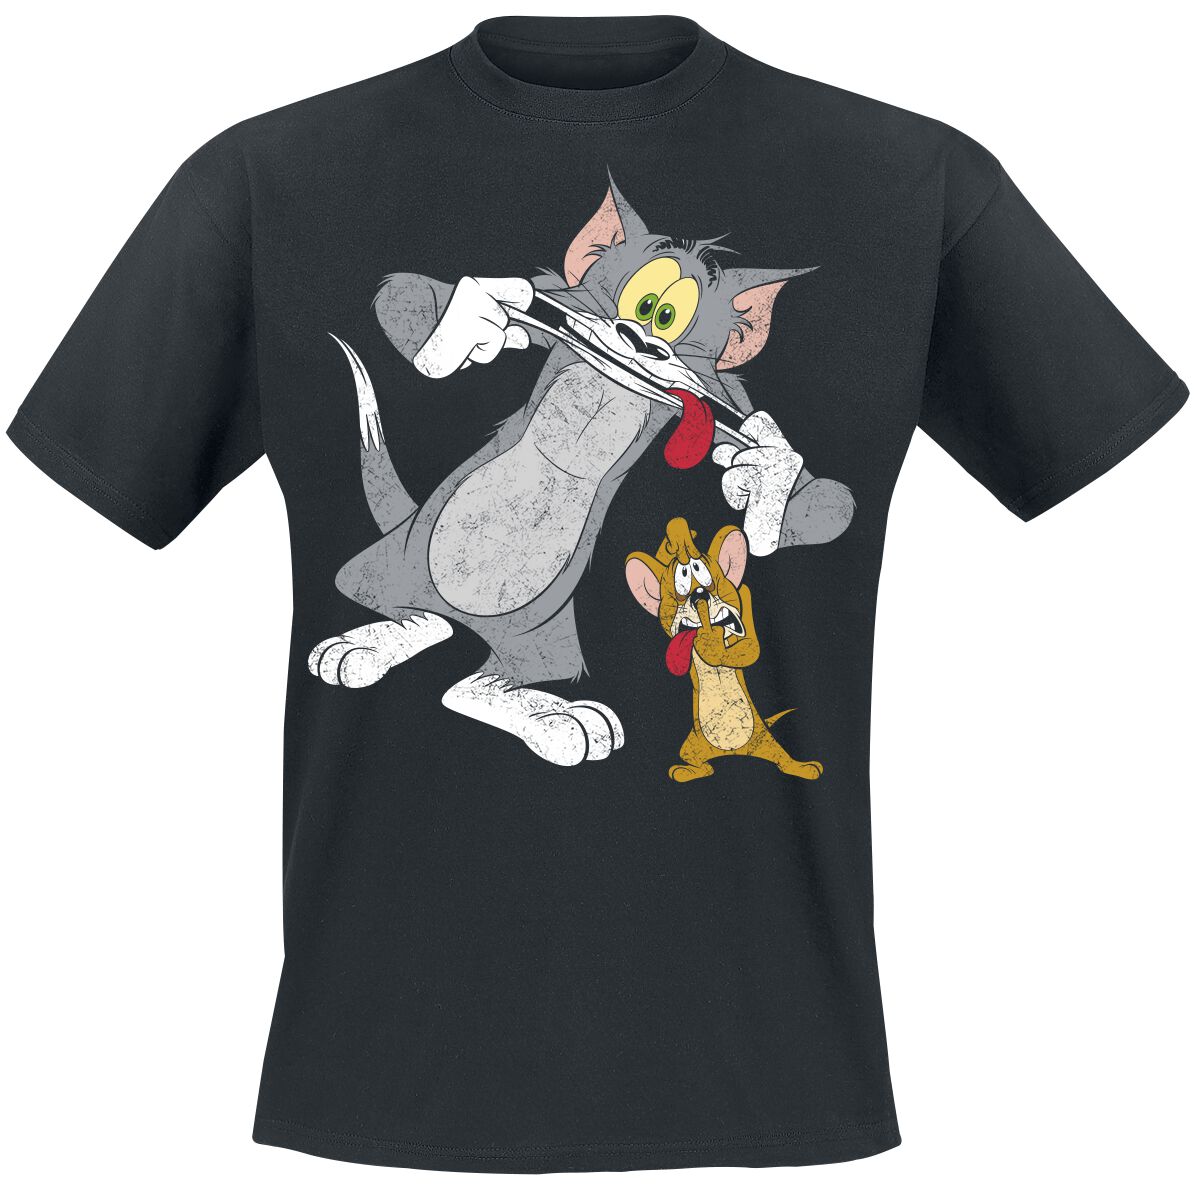 Tom And Jerry T-Shirt - Funny Faces! - S bis XL - für Männer - Größe S - schwarz  - EMP exklusives Merchandise!